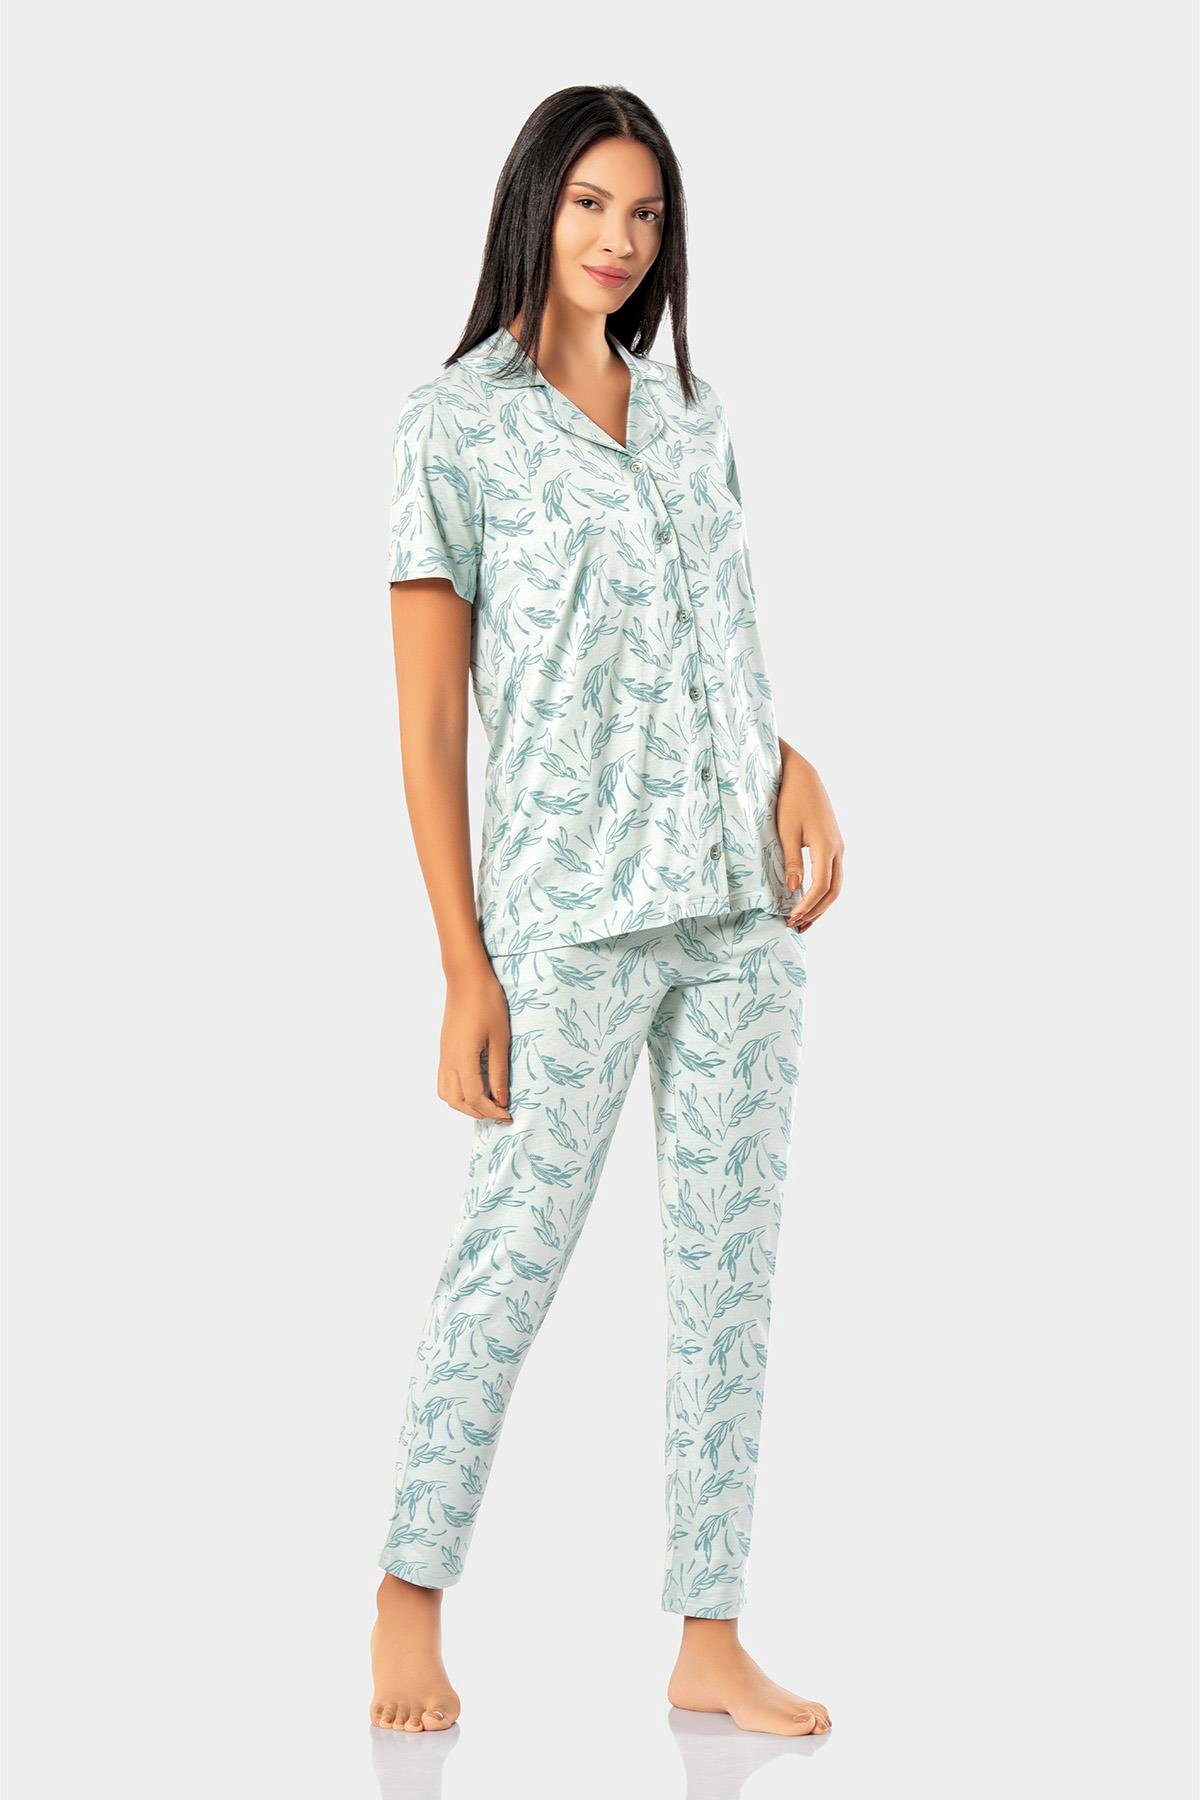 Erdem İç Giyim Bayan Yazlık Pijama Takımı: Erdem İç Giyim